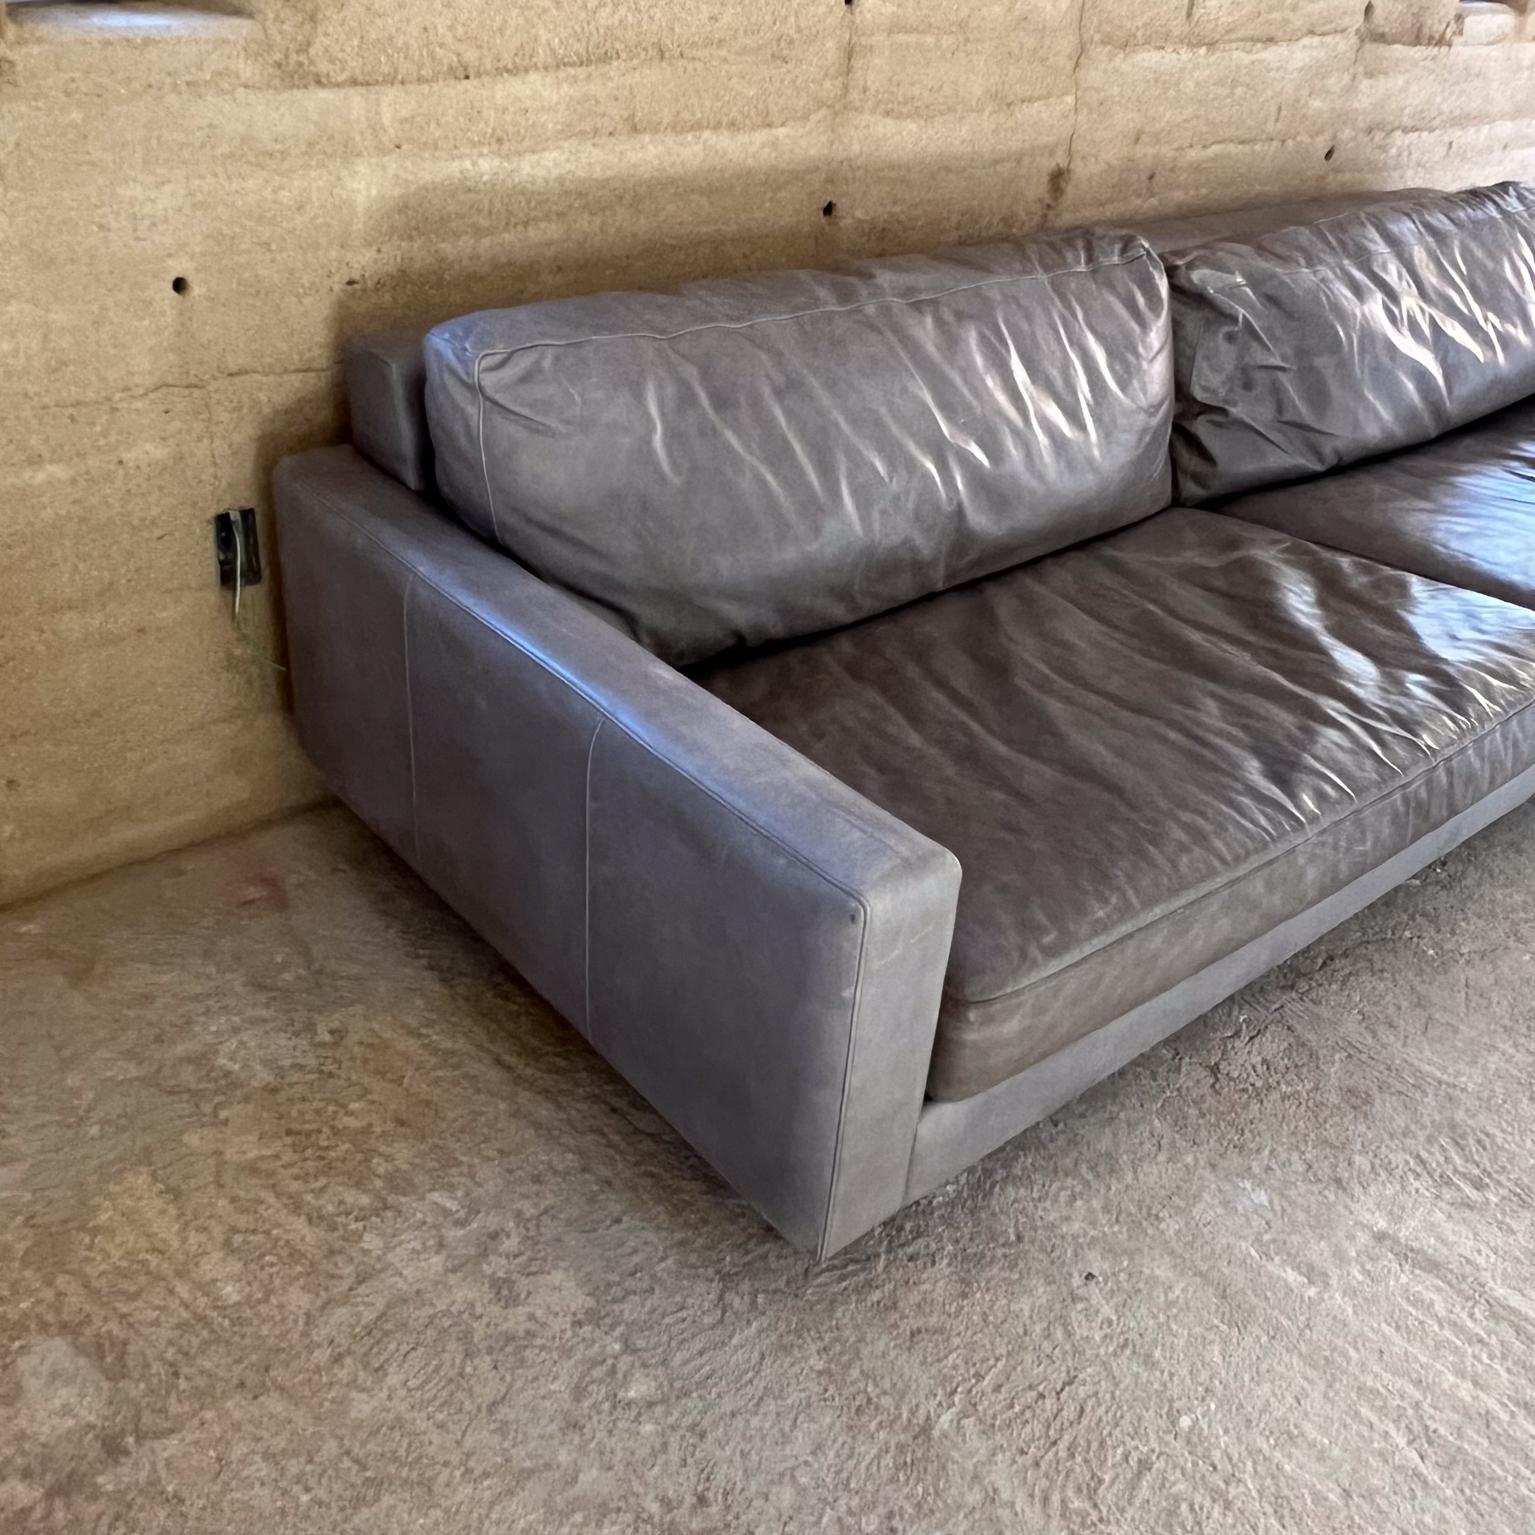 2000s Modern Gray Leather Sofa Pierson Room & Board In Fair Condition For Sale In Chula Vista, CA